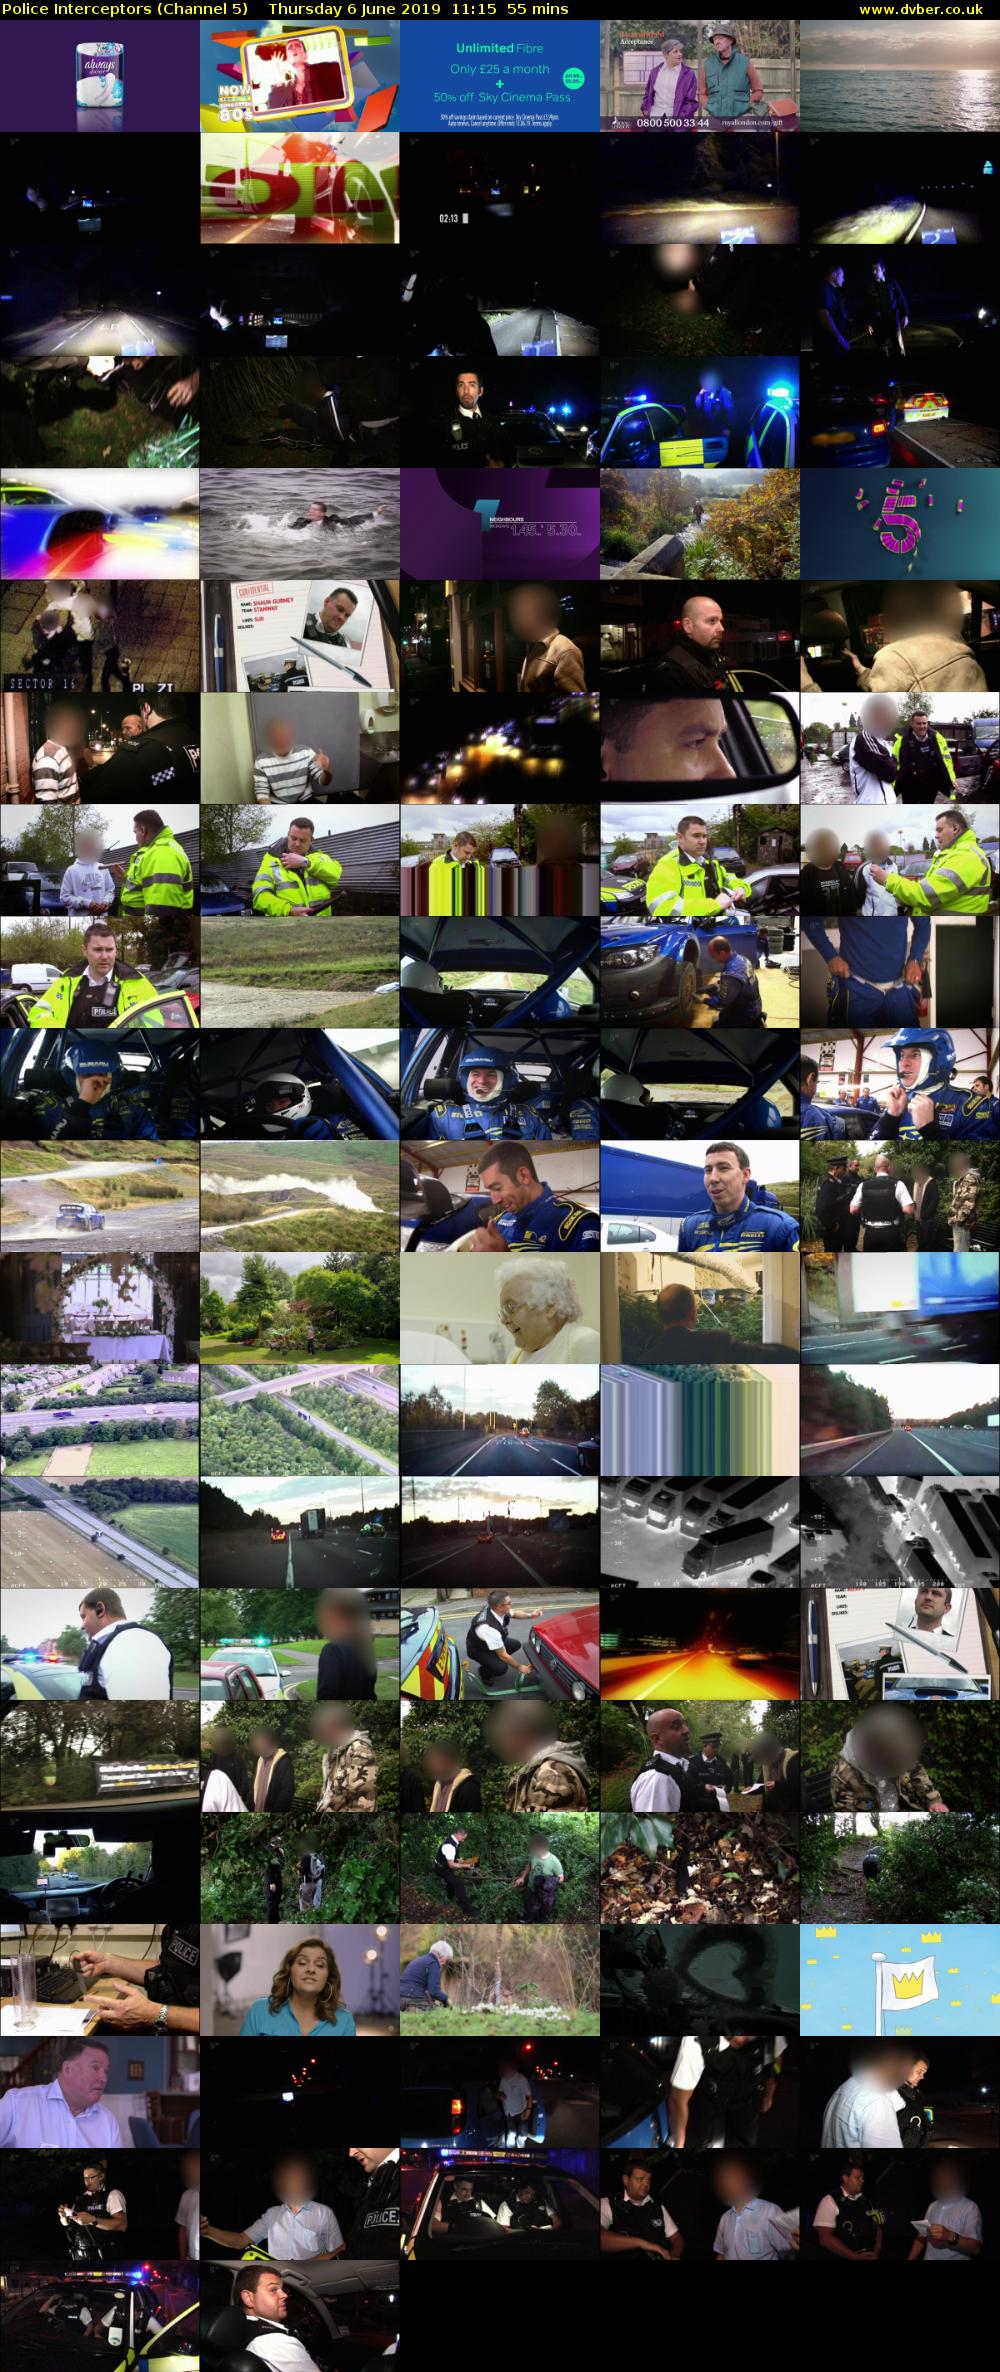 Police Interceptors (Channel 5) Thursday 6 June 2019 11:15 - 12:10